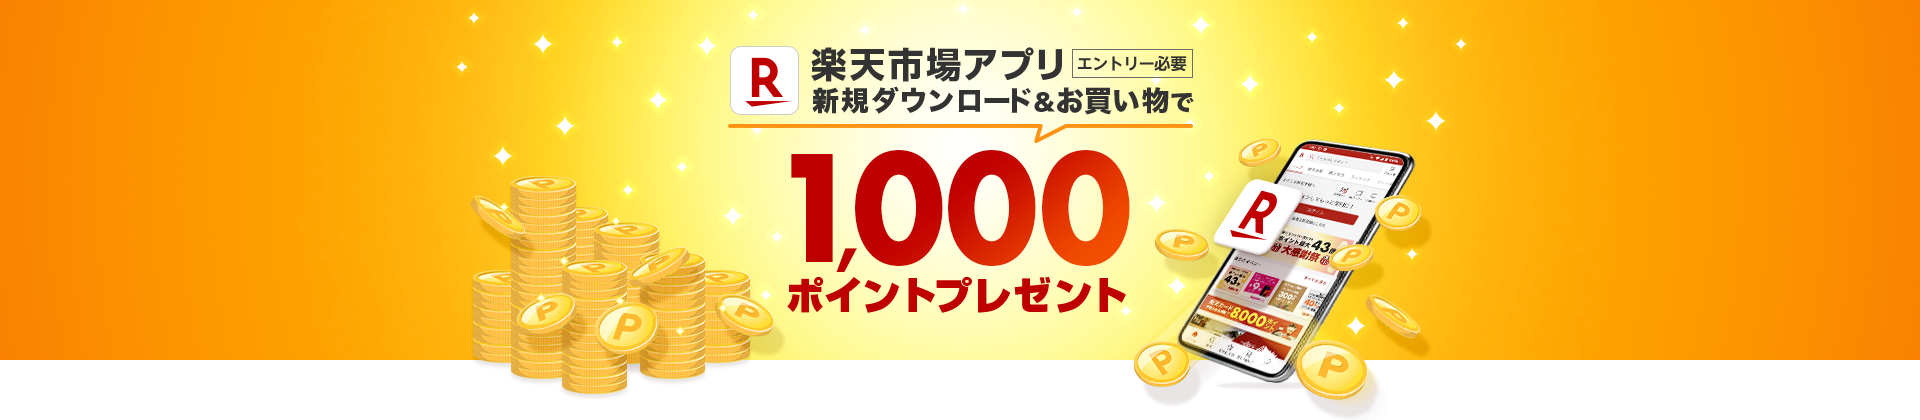 楽天市場アプリ 新規ダウンロードで1,000ポイントプレゼント